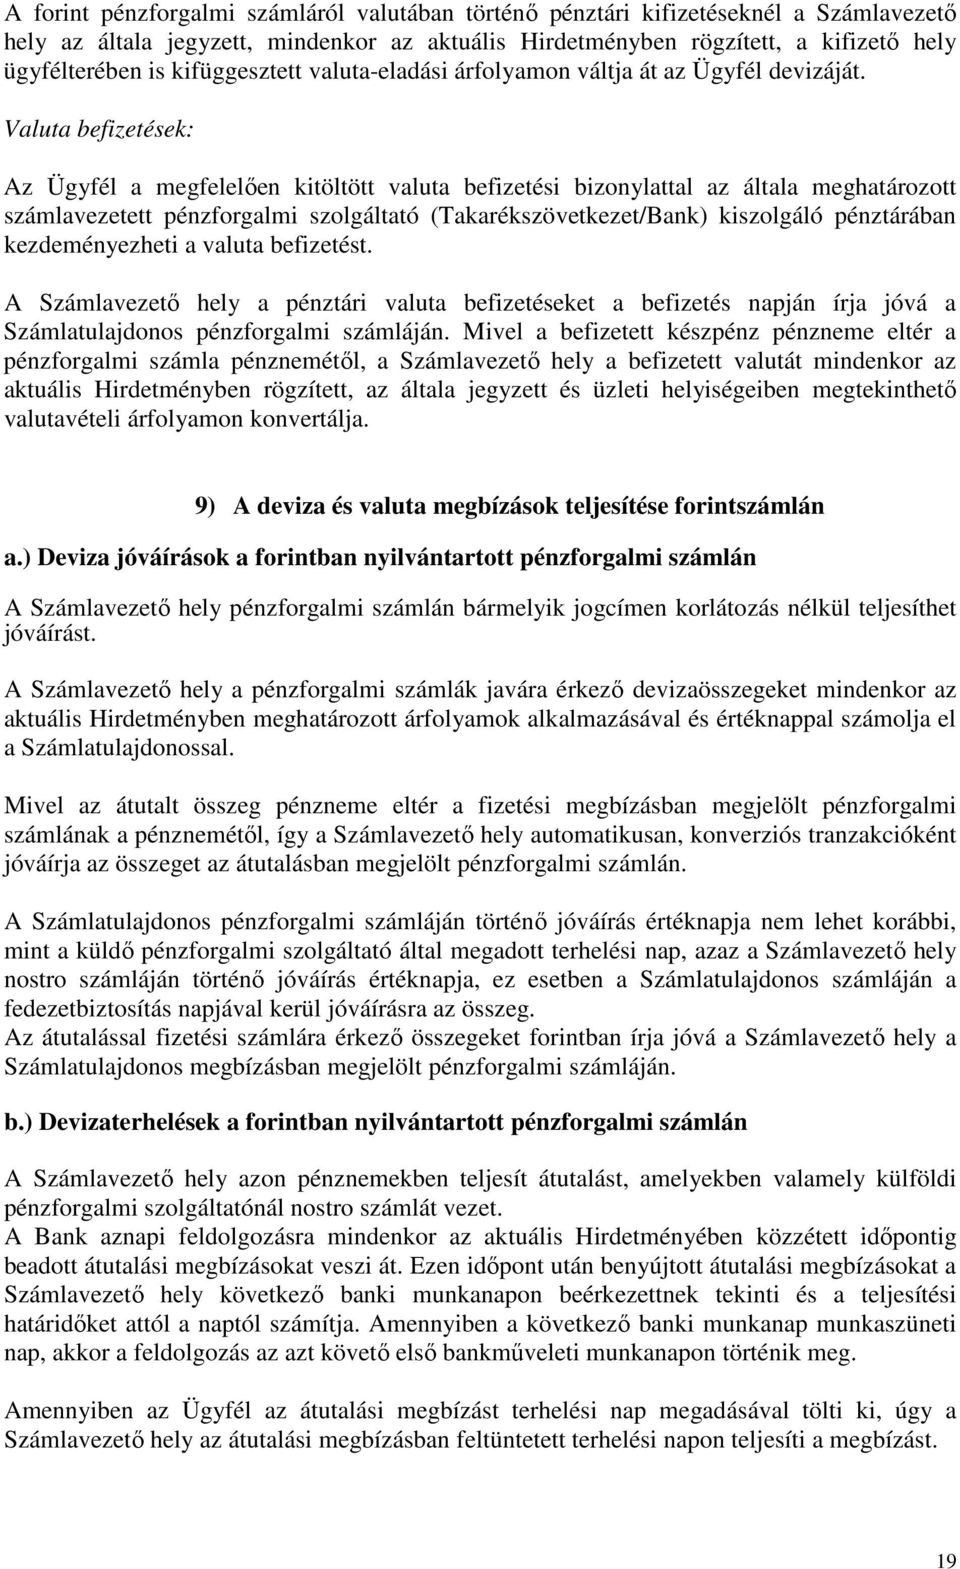 Valuta befizetések: Az Ügyfél a megfelelıen kitöltött valuta befizetési bizonylattal az általa meghatározott számlavezetett pénzforgalmi szolgáltató (Takarékszövetkezet/Bank) kiszolgáló pénztárában